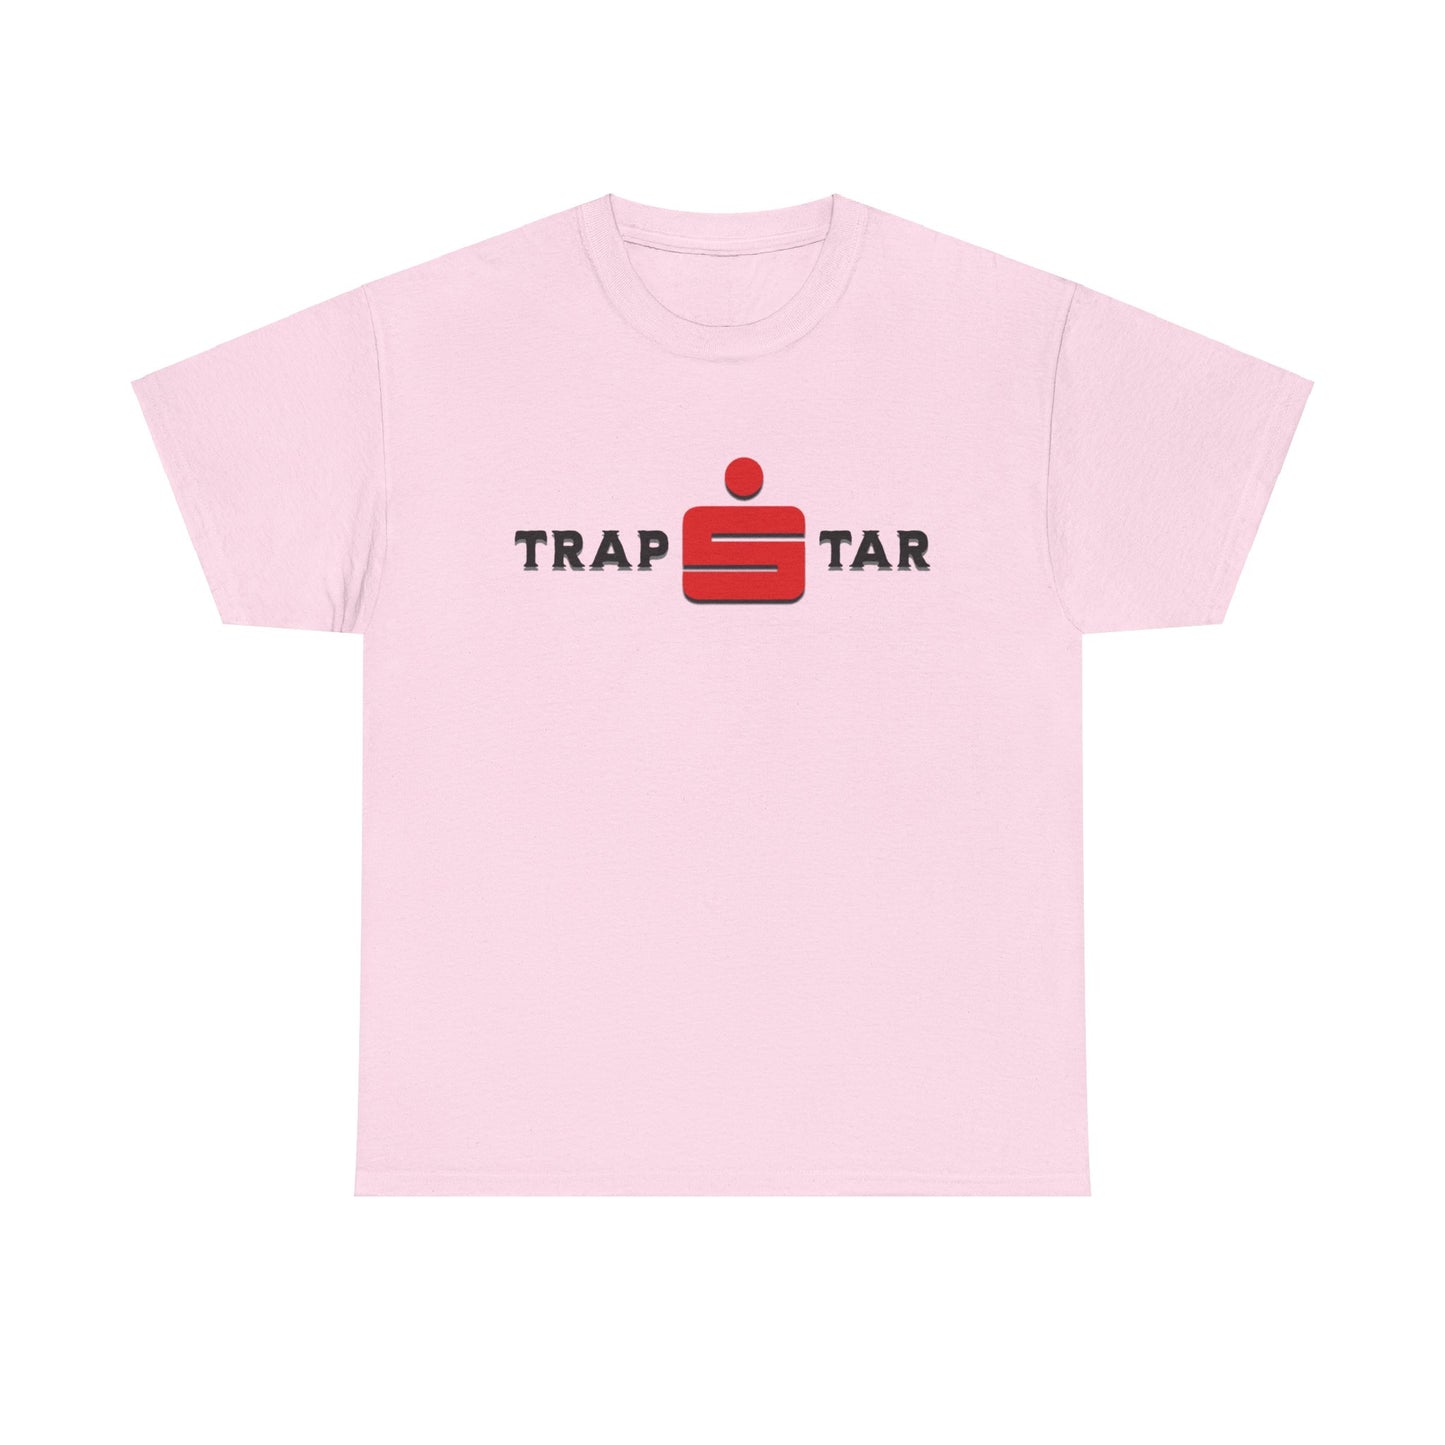 Entdecke das exklusive Trapstar T-Shirt mit Sparkassen-Logo! Hergestellt aus 100% Baumwolle für maximalen Komfort, bietet es urbanen Streetwear-Style und perfekte Passform. Ideal für Modebewusste, vielseitig kombinierbar, pflegeleicht und ein Must-Have in deiner Streetwear-Kollektion. Jetzt kaufen!